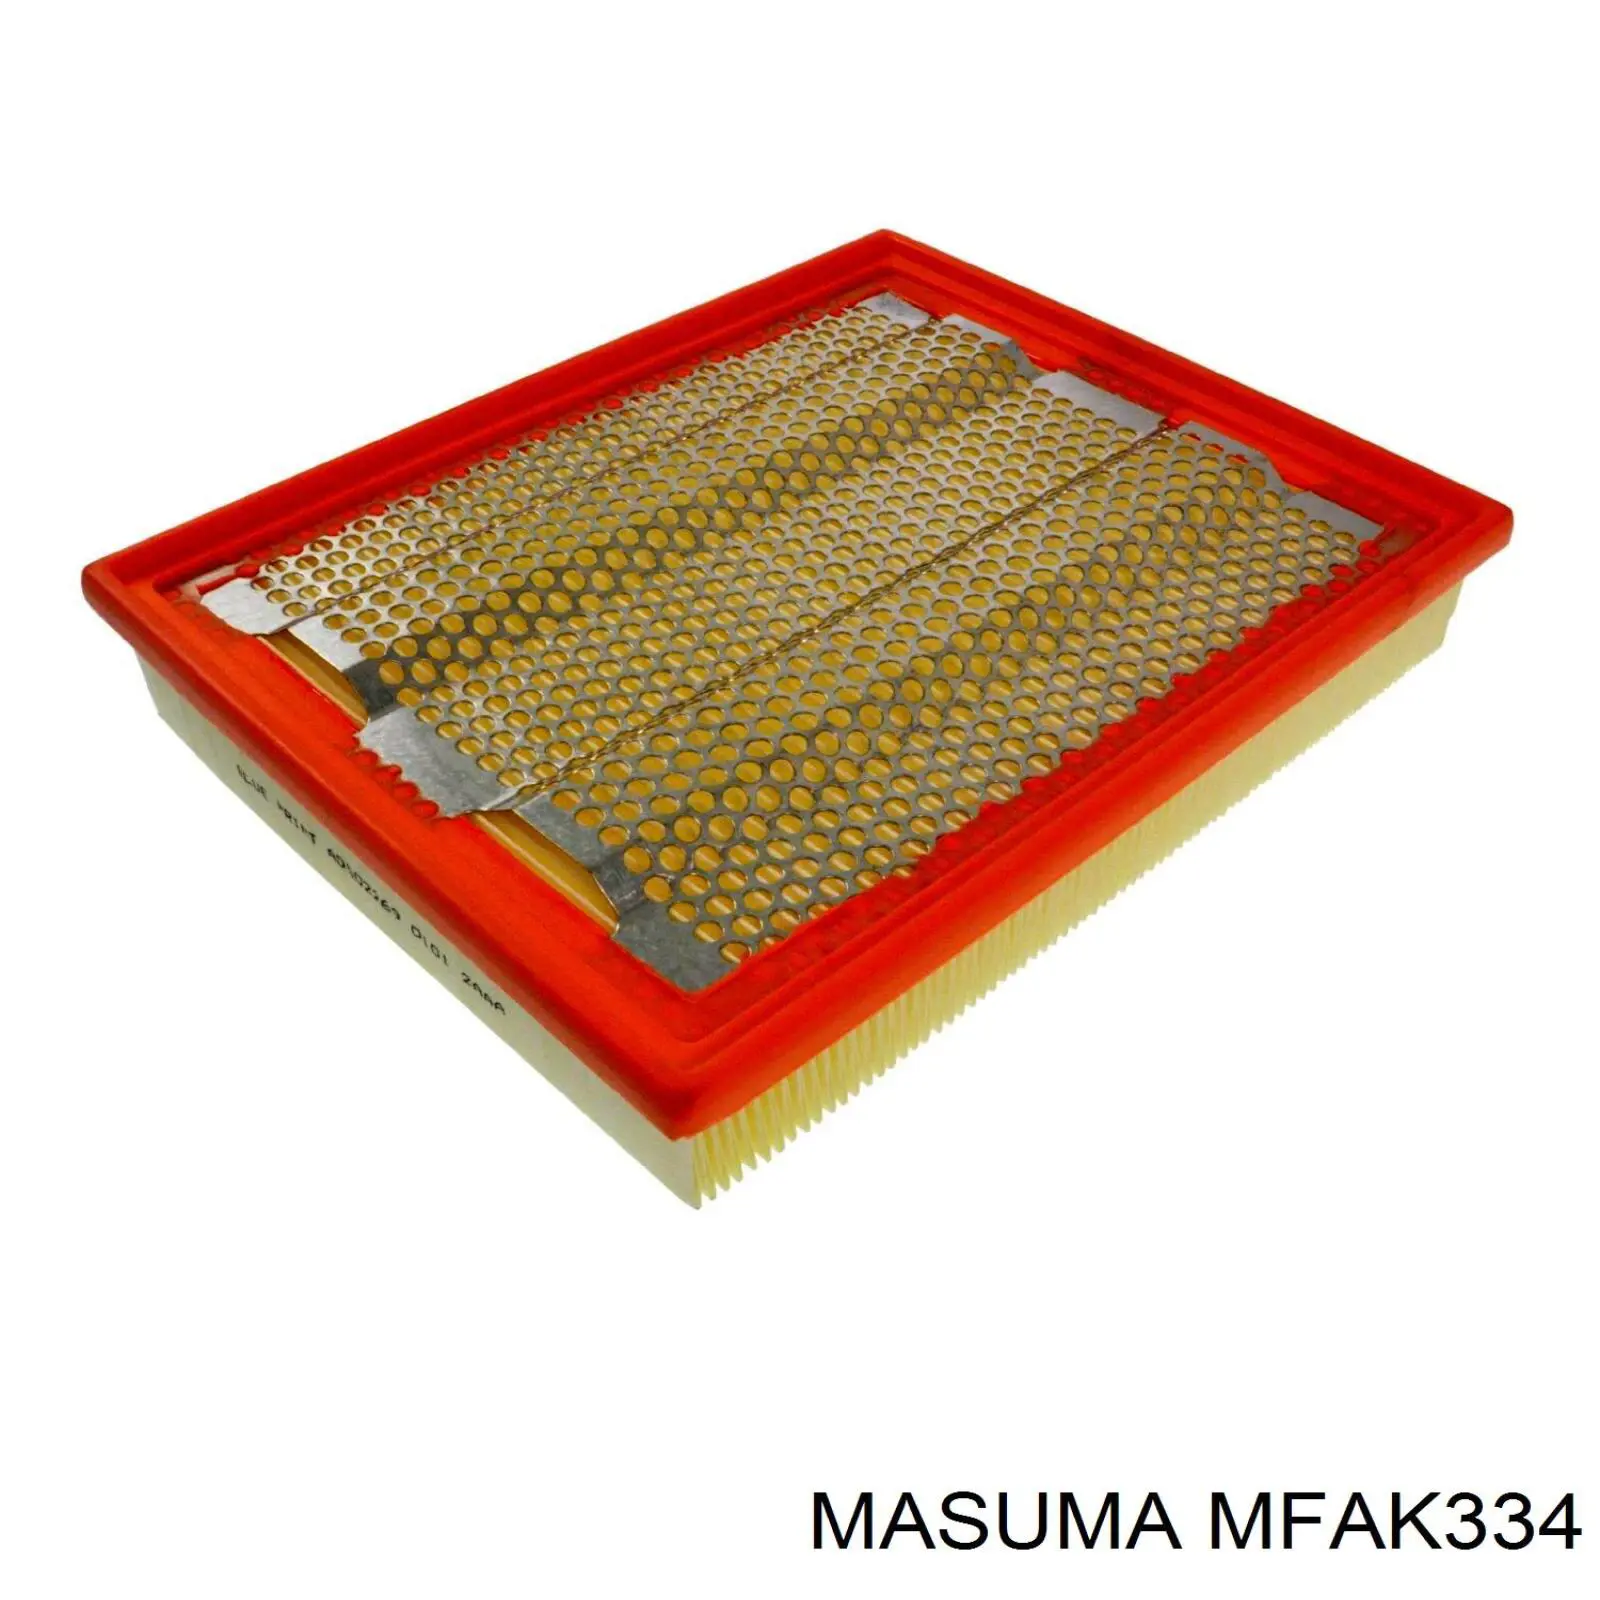 MFAK334 Masuma воздушный фильтр